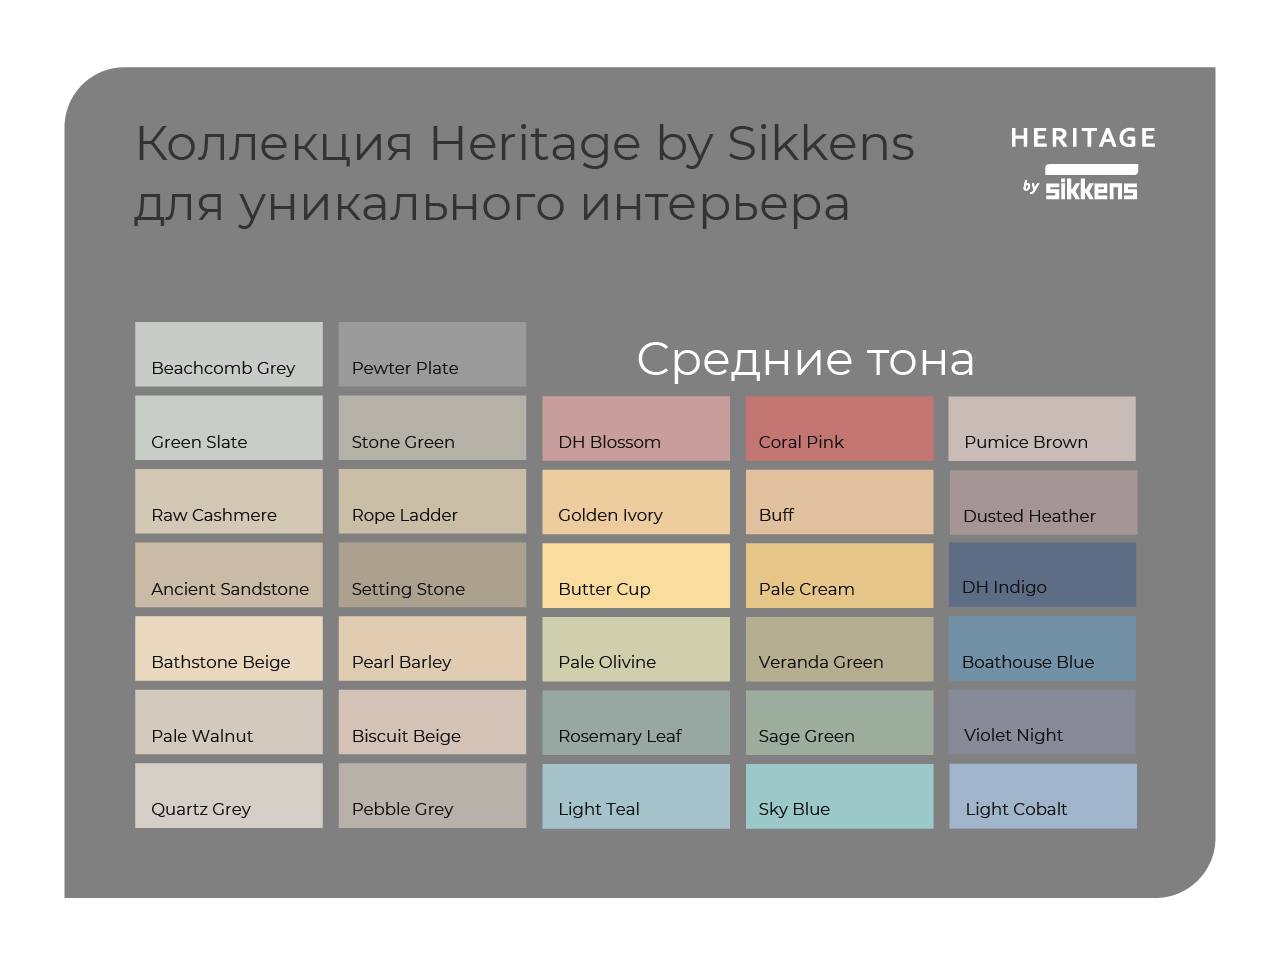 Новинка! Линейка красок премиум-класса, разработанная специально для России: Heritage by Sikkens